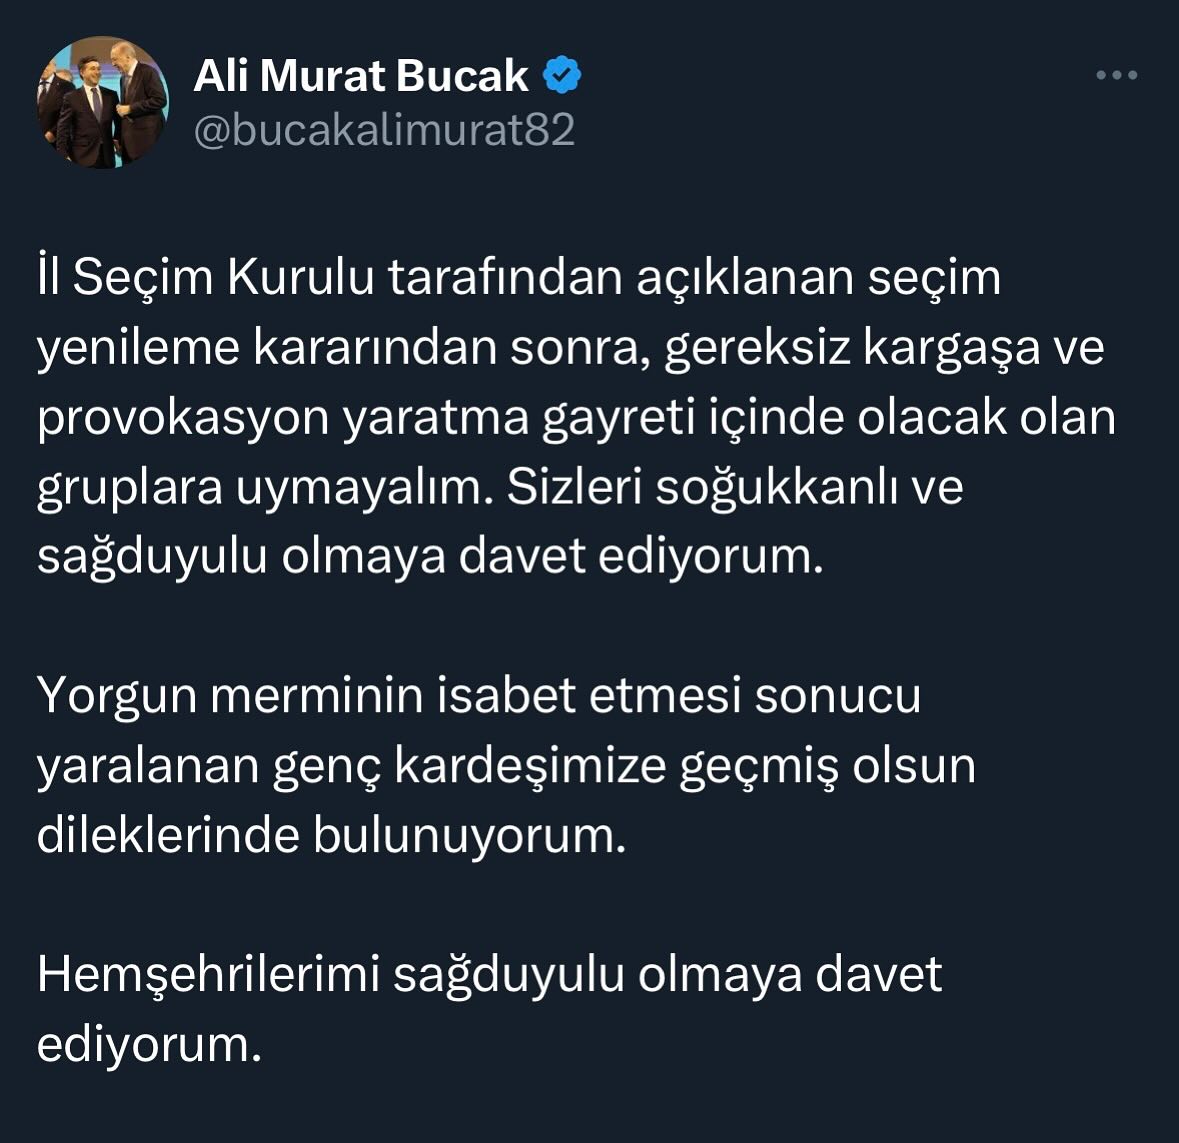 #SONDAKİKA Ali Murat Bucak’tan Siverek için sağduyu çağrısı 

@bucakalimurat82 
.
#siverek #seçim #yerelseçim #akparti #alimuratbucak #haber #sondakika #sukhaber #türkiye